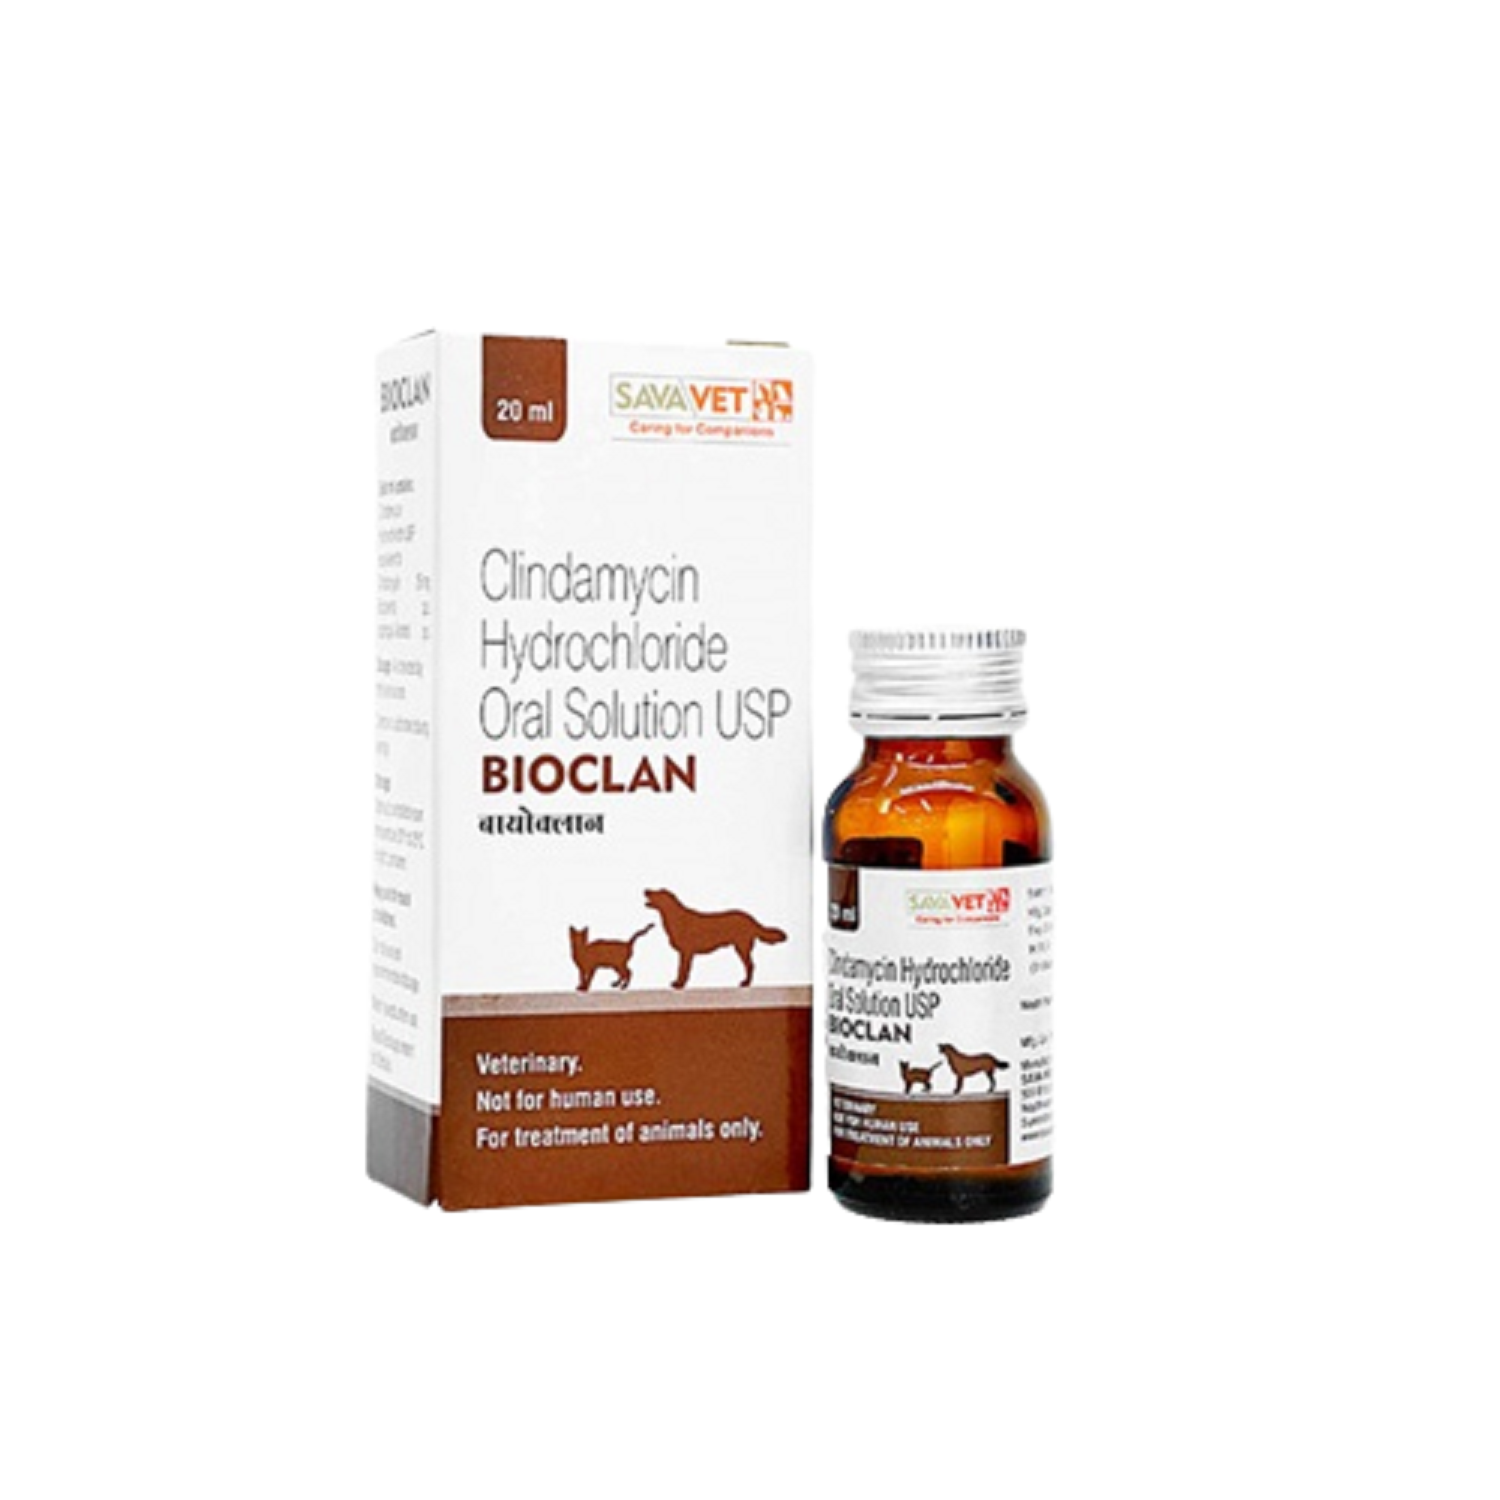 bioclan oral solution